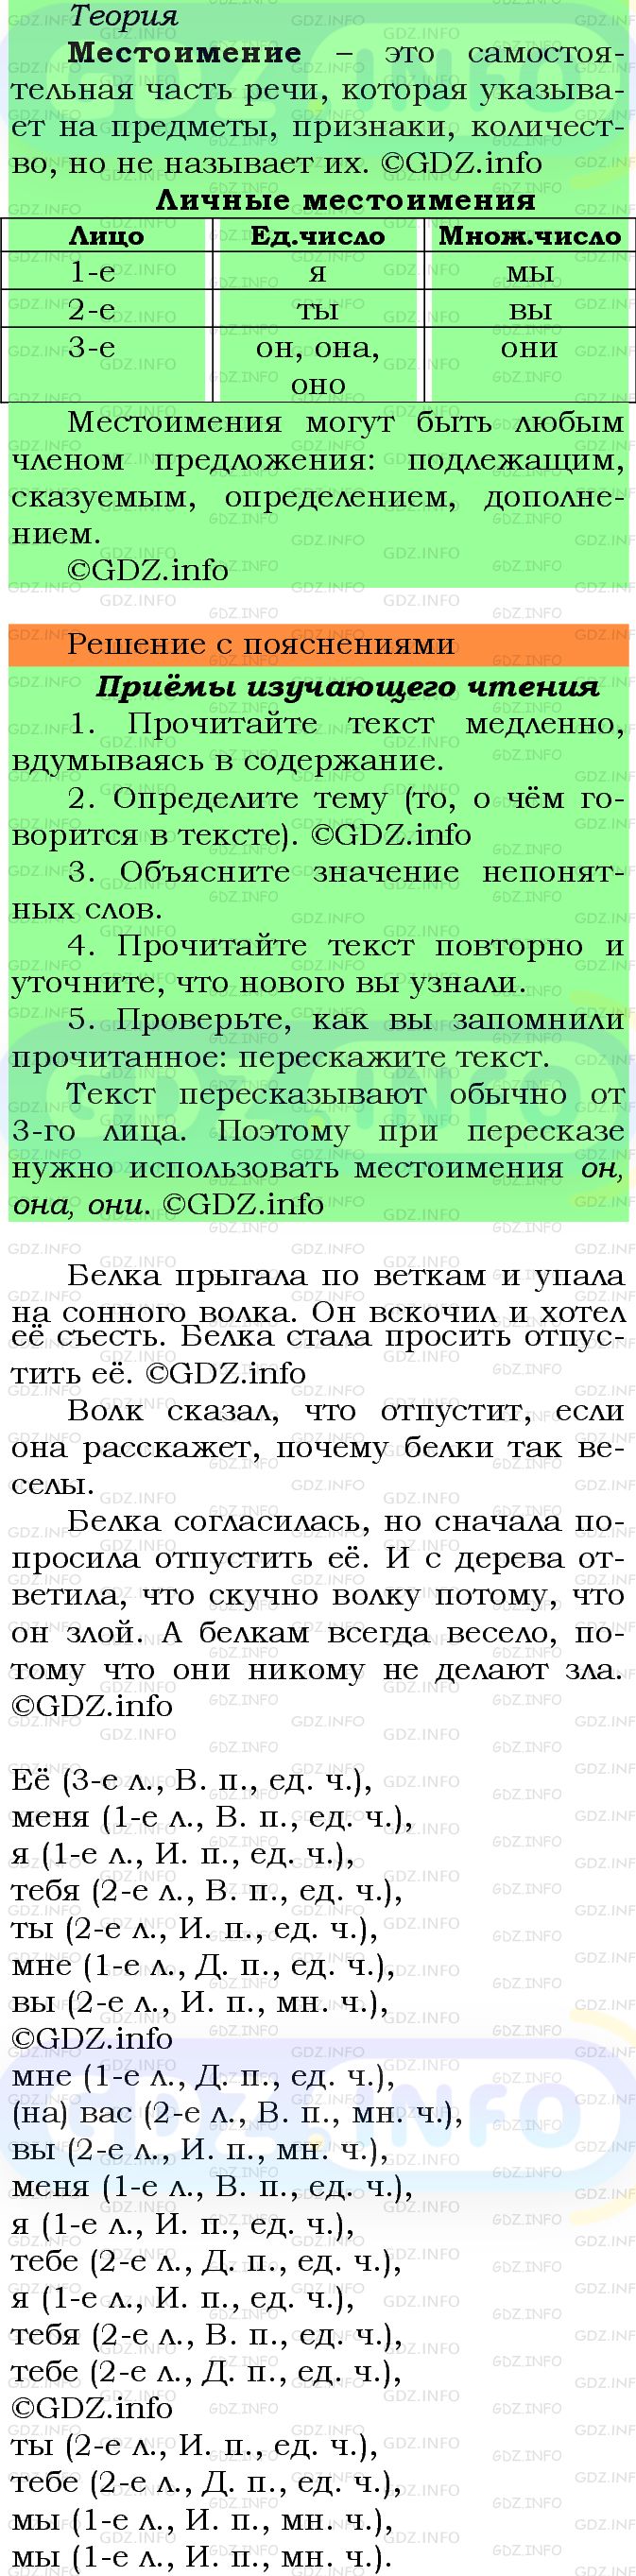 Фото решения 6: Номер №114 из ГДЗ по Русскому языку 5 класс: Ладыженская Т.А. 2012г.